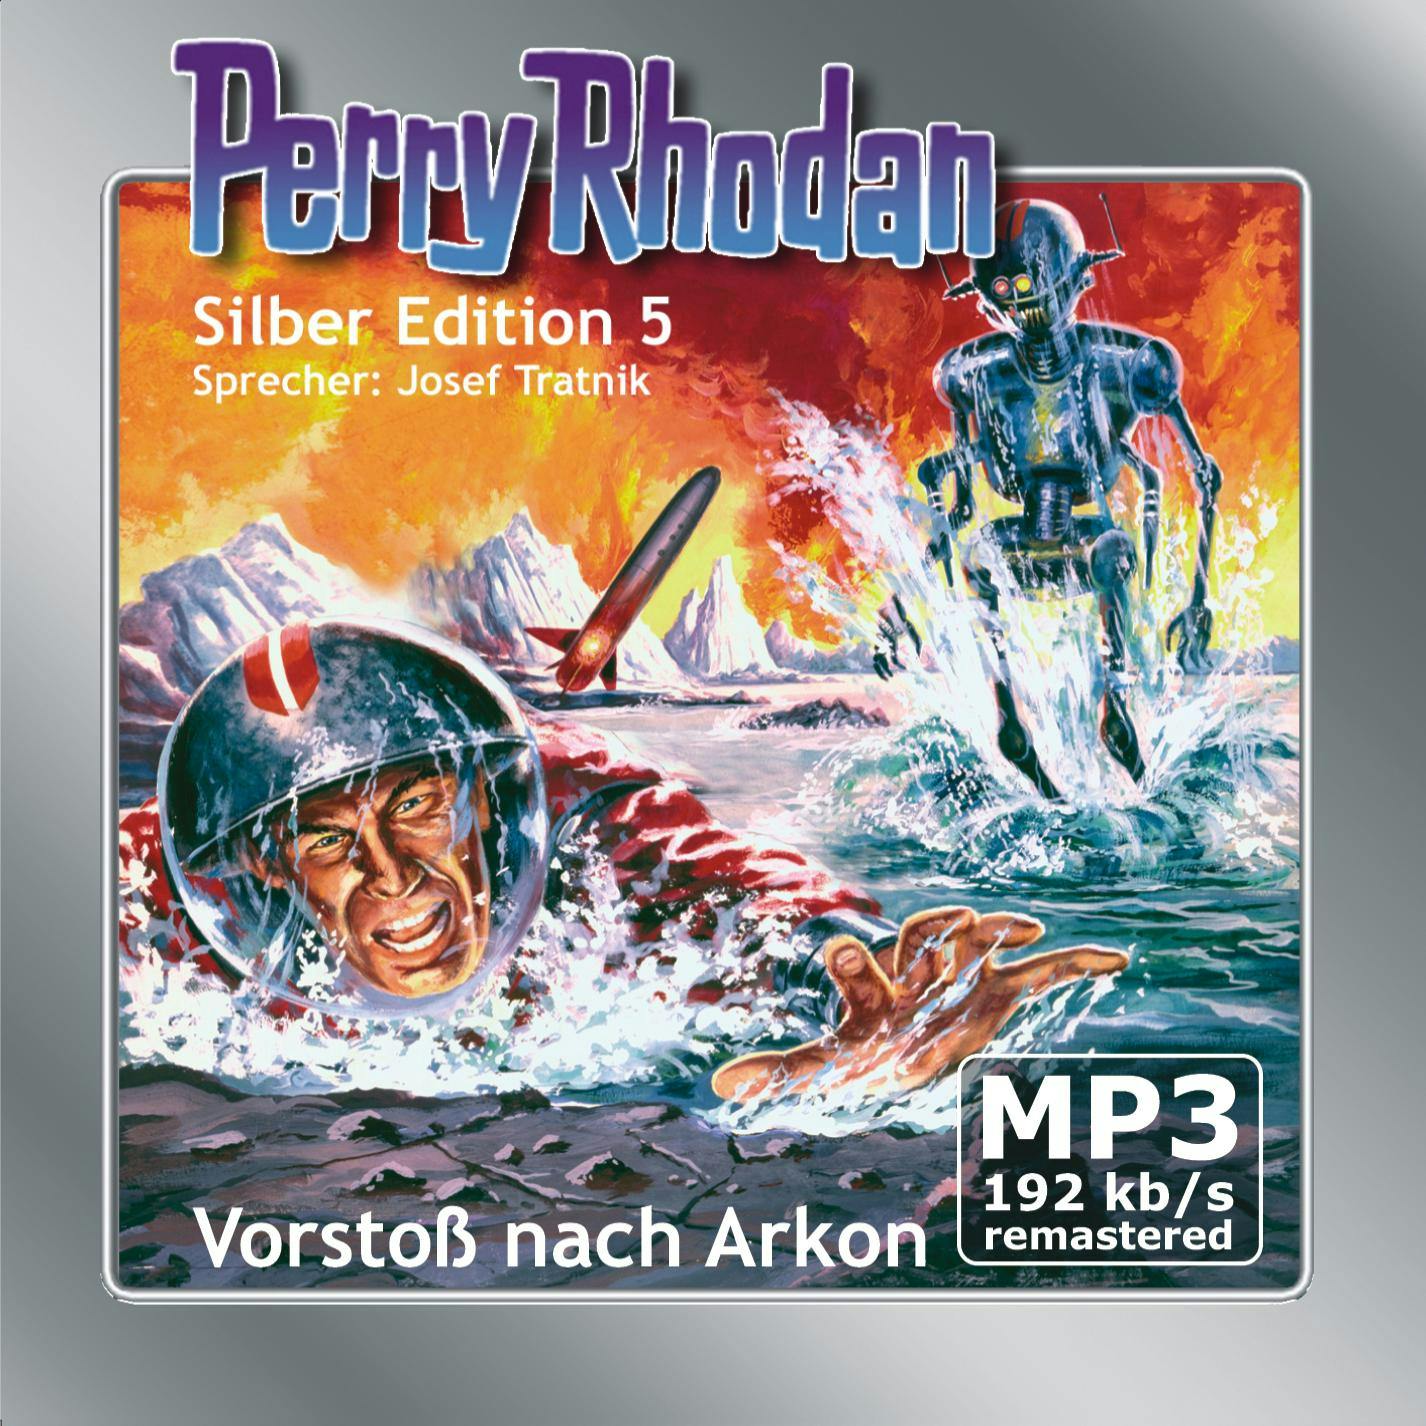 Perry Rhodan Silber Edition 05: Vorstoß nach Arkon: Perry Rhodan-Zyklus "Die Dritte Macht" - Clark Darlton, K.H. Scheer, Kurt Brand, Kurt Mahr